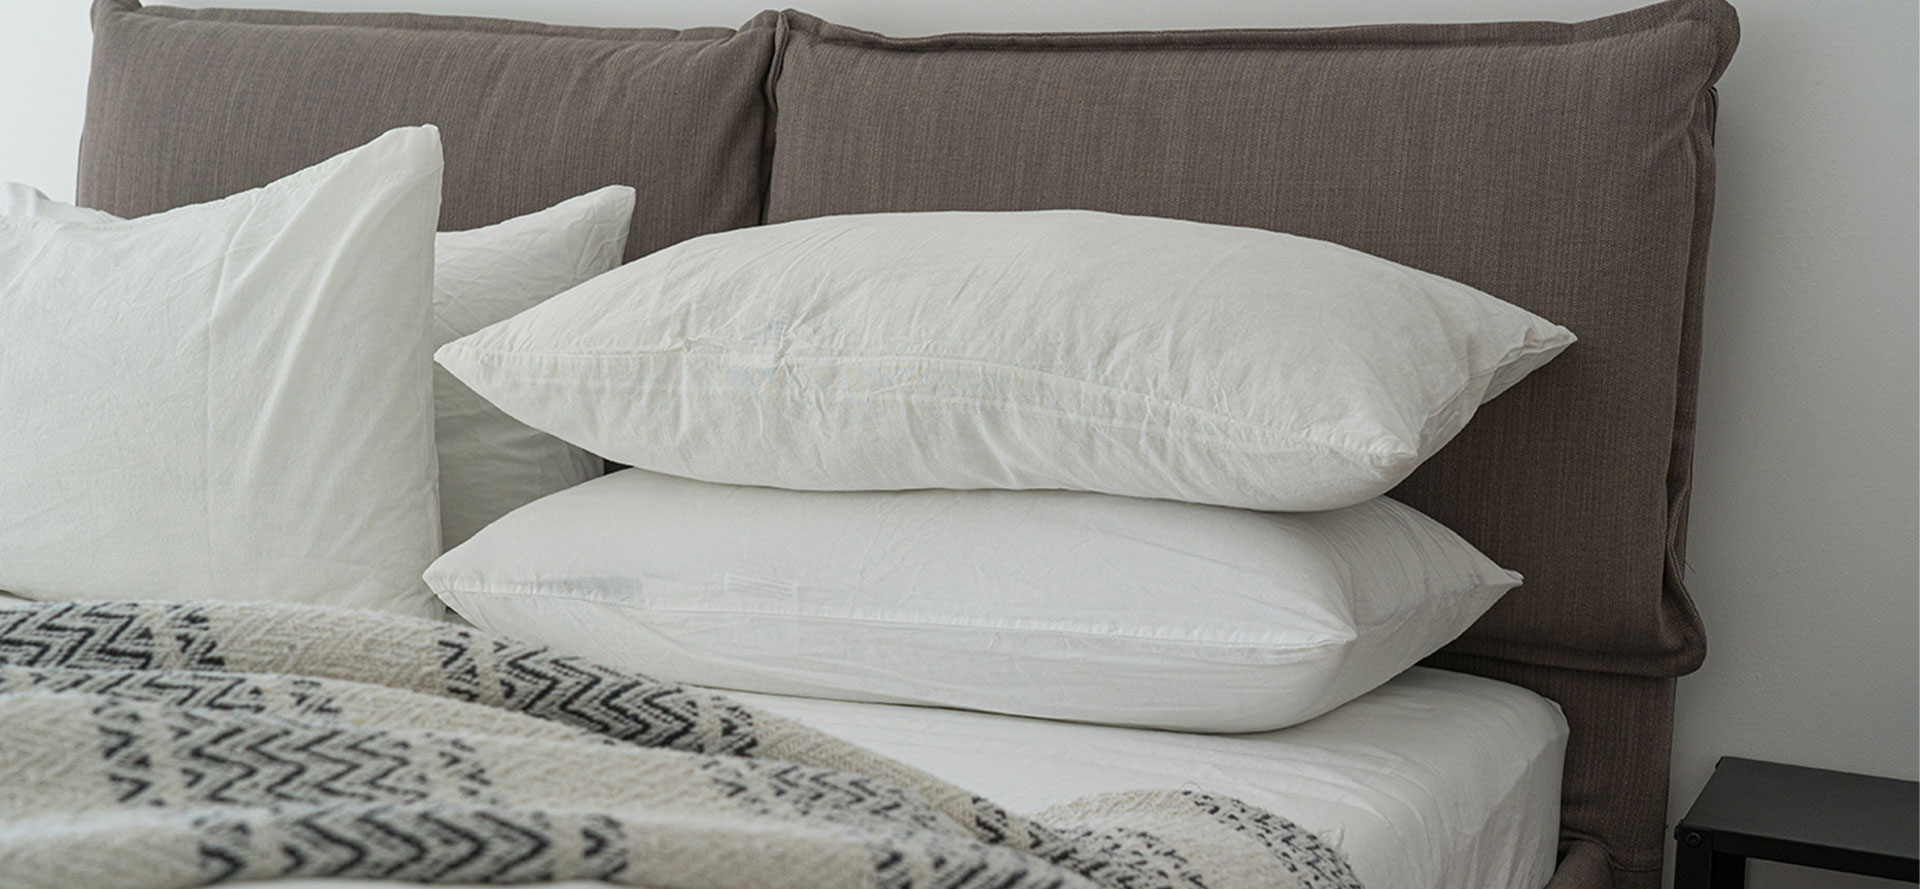 Mattress for Fibromyalgia with pillows.